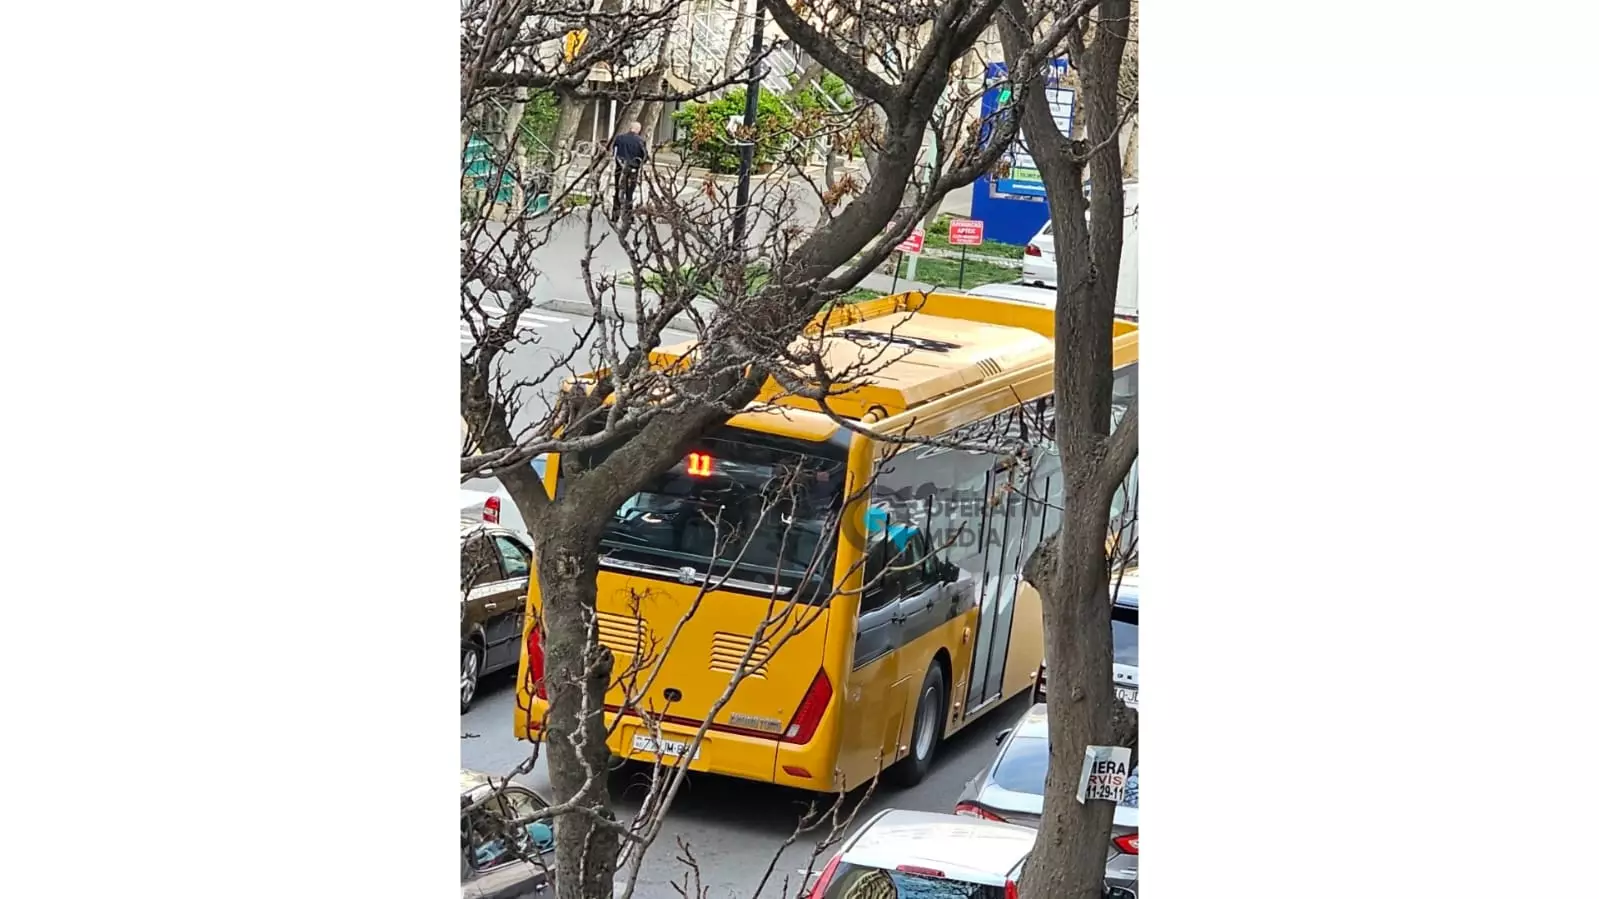 11 nömrəli marşrut xəttinə də “Zhongtong” elektrik avtobusu buraxılıb